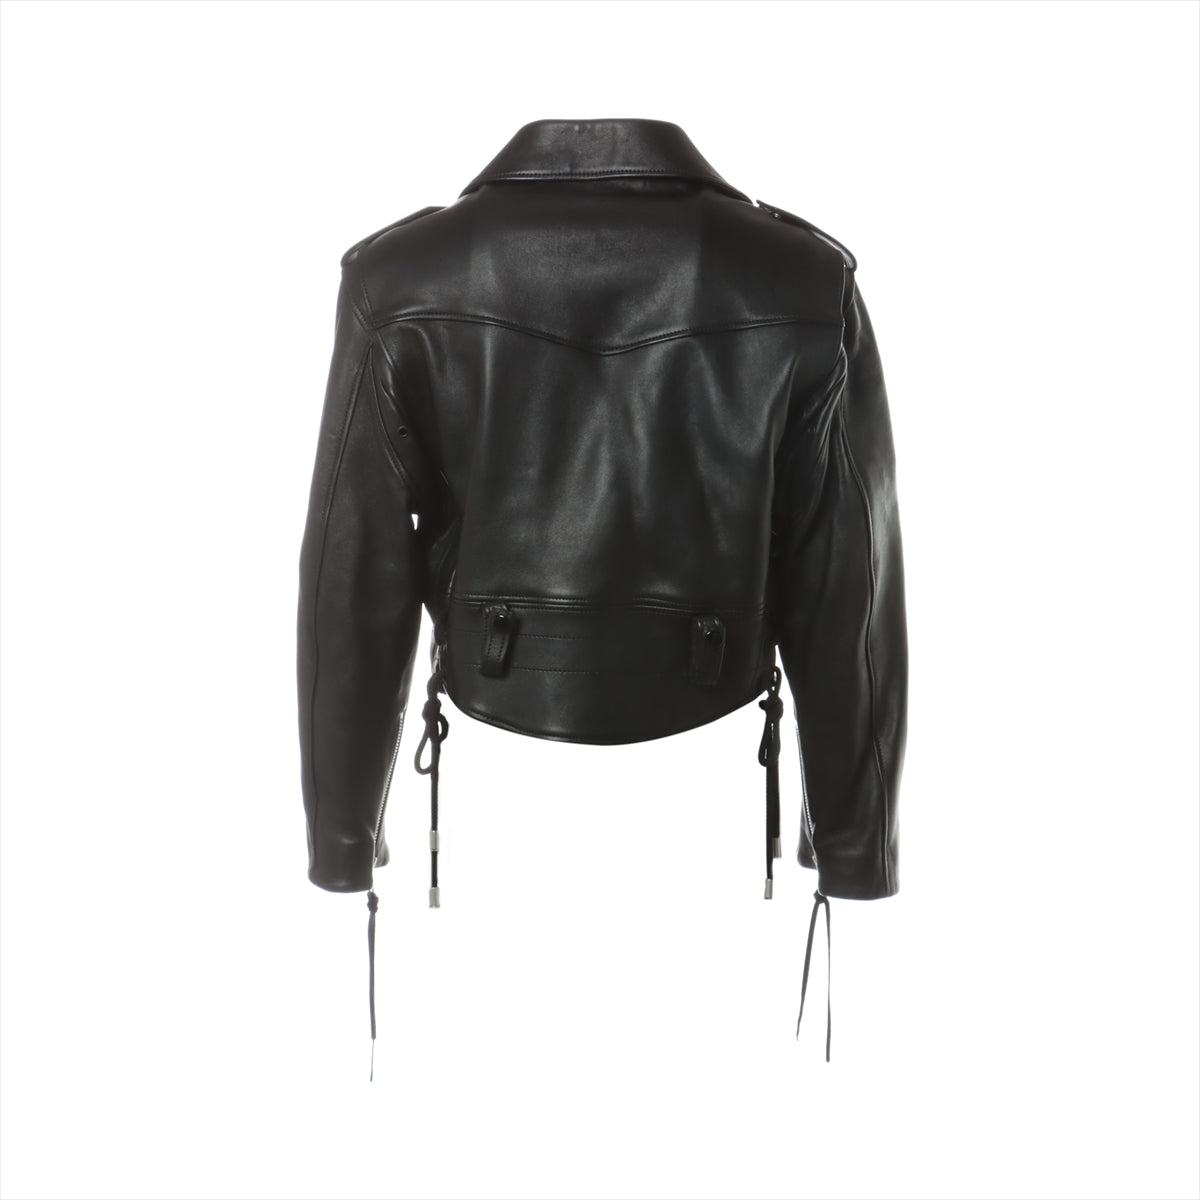 Maison Margiela 20AW Leather Leather jacket 36 Ladies' Black  S51AM0403 1